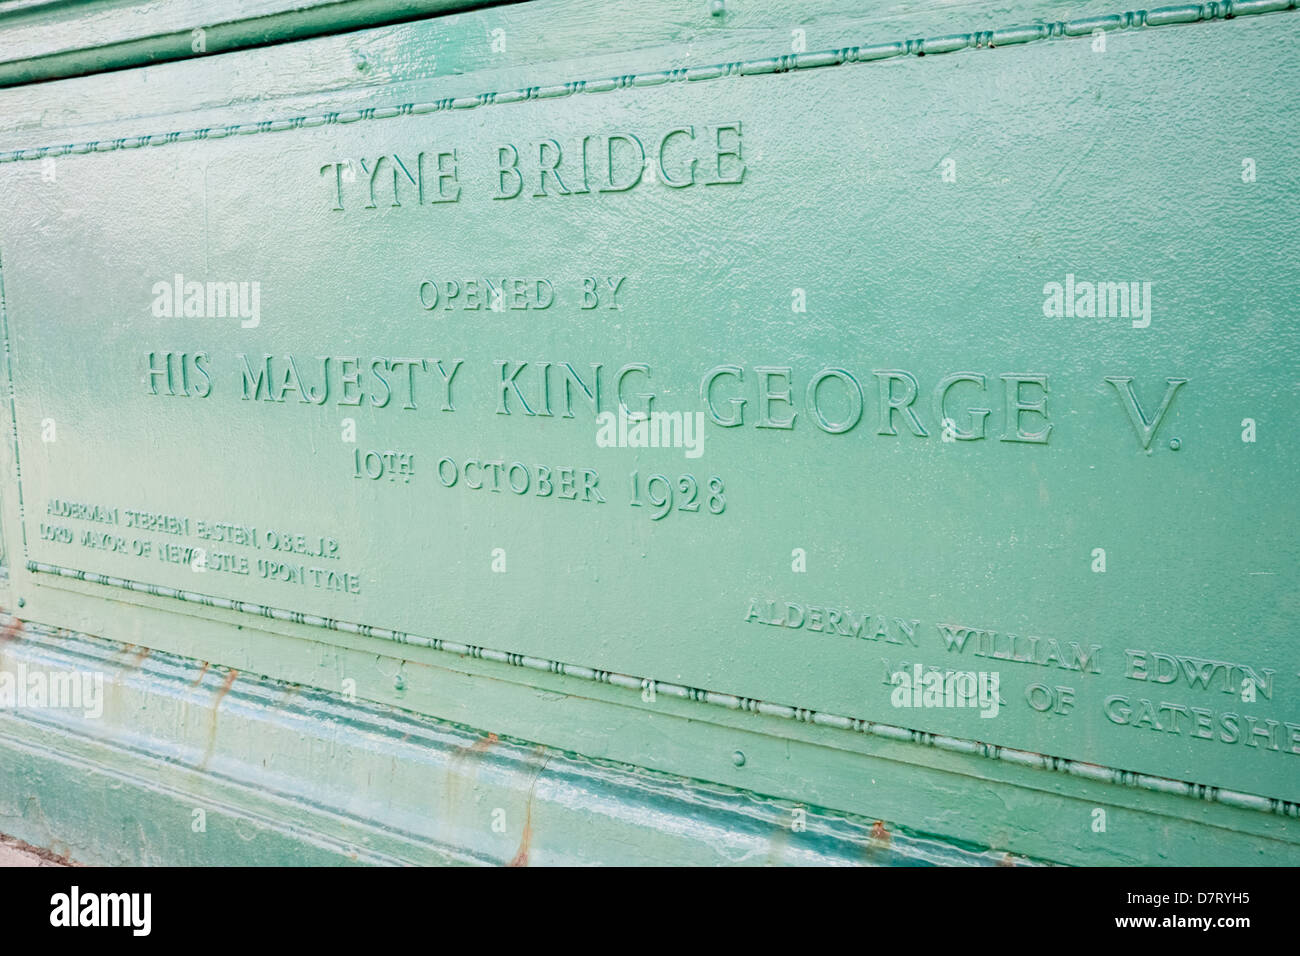 Tyne Bridge Eröffnung Plaque. Von König Georg v. eröffnet am 10. Oktober 1928 Stockfoto